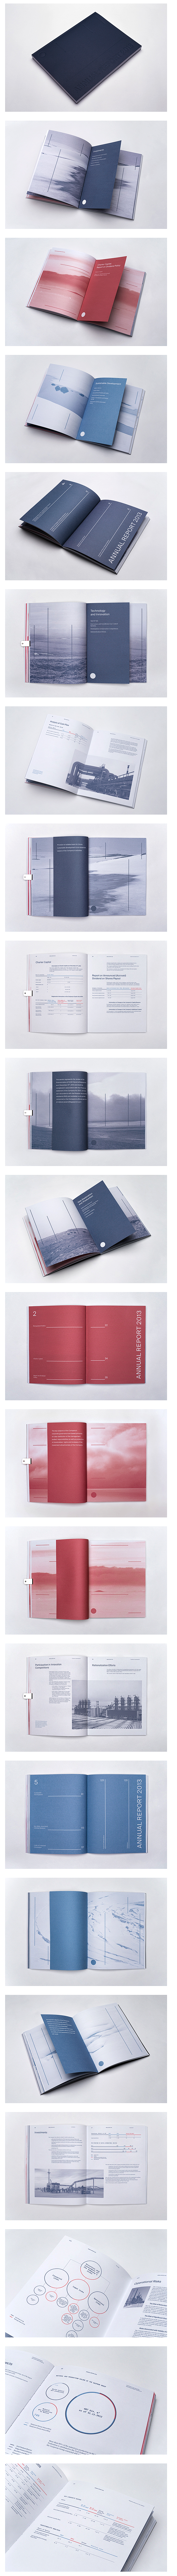 年报画册设计 画册设计 封面设计 企业画...